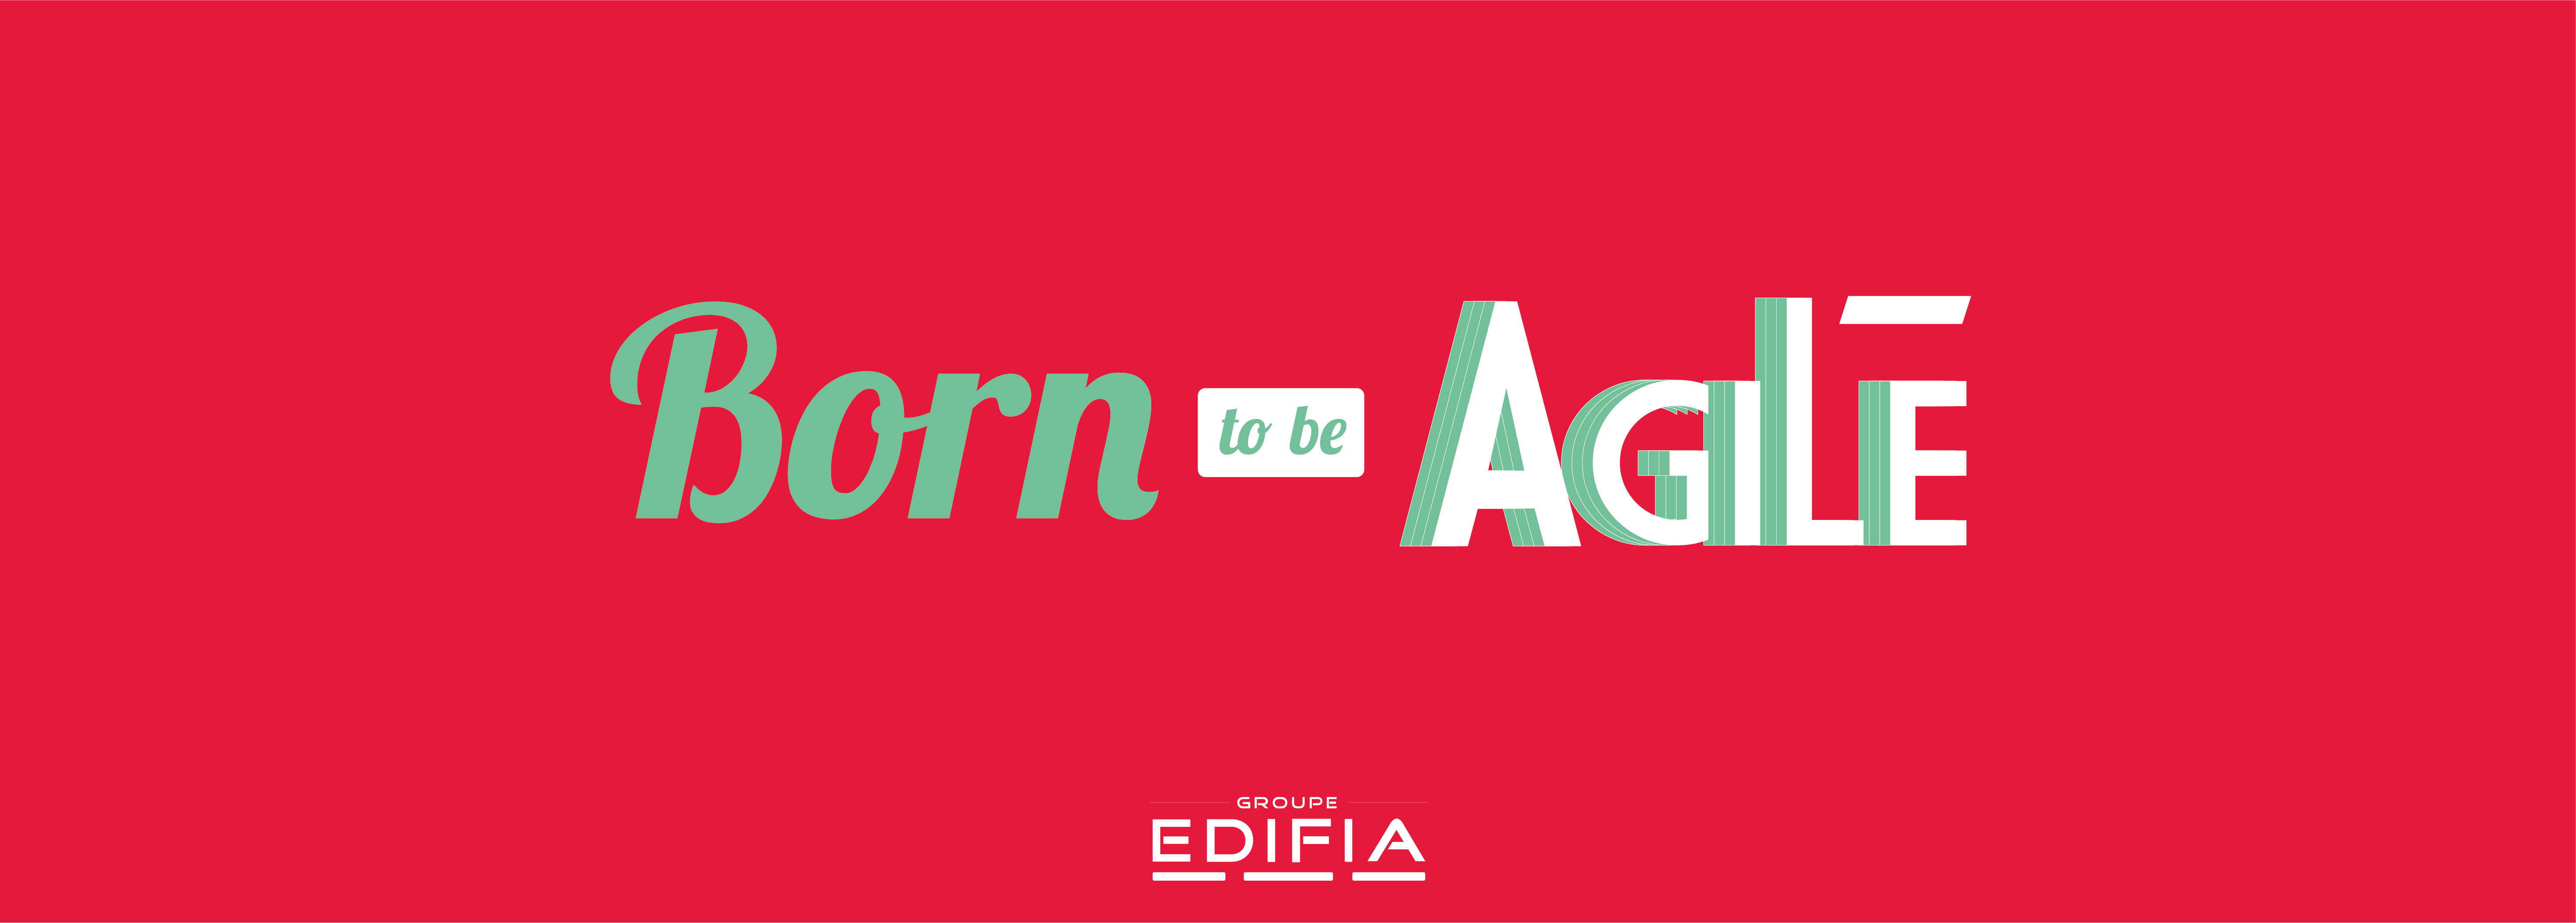 edifia born to be agile